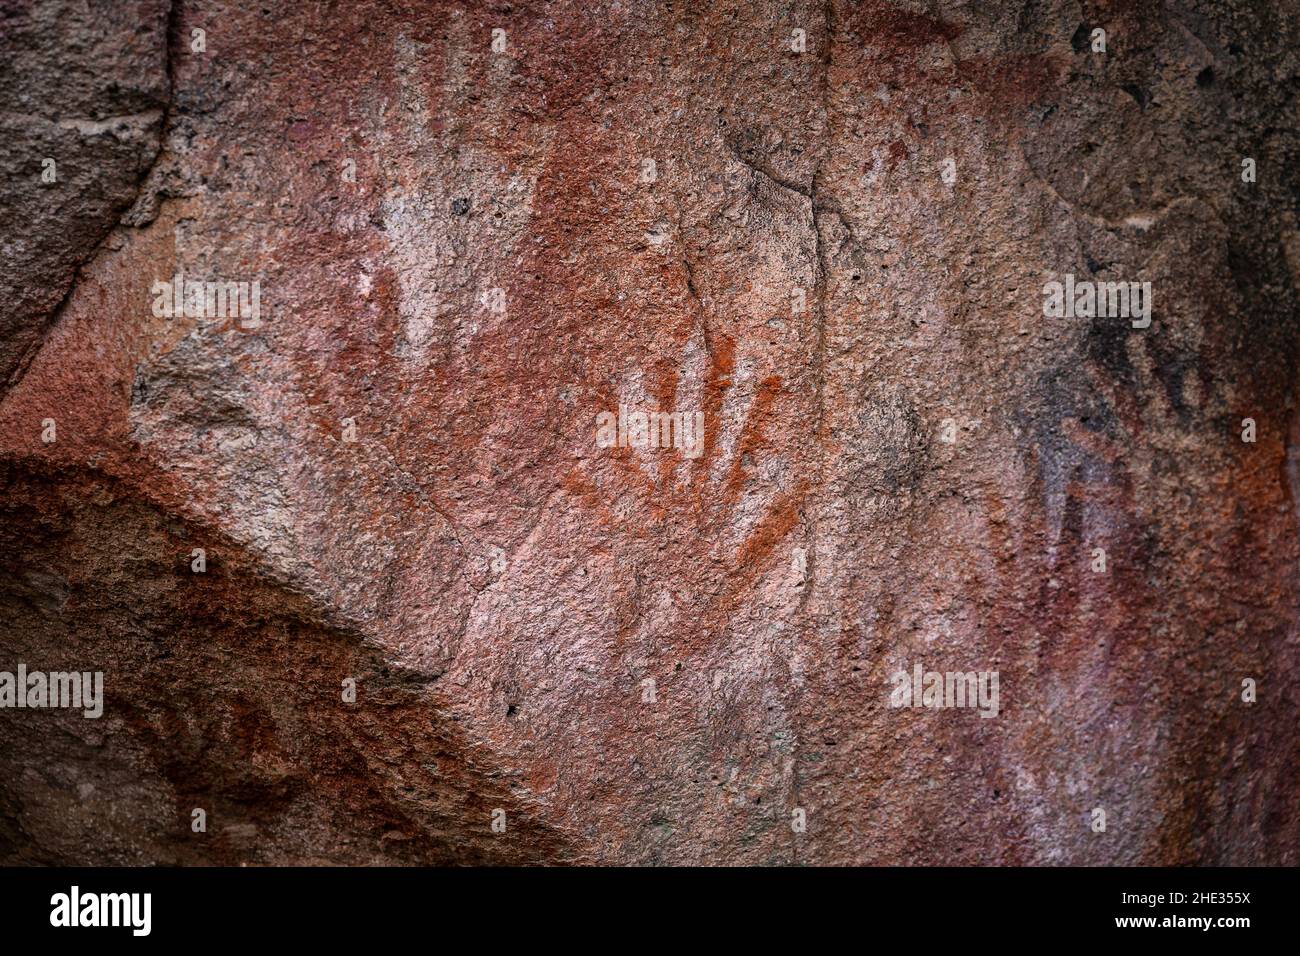 Primo piano dettaglio dell'arte rupestre preistorica che mostra una mano con sei dita alla Grotta delle mani aka Cueva de Las Manos in Patagonia, Argentina. Foto Stock